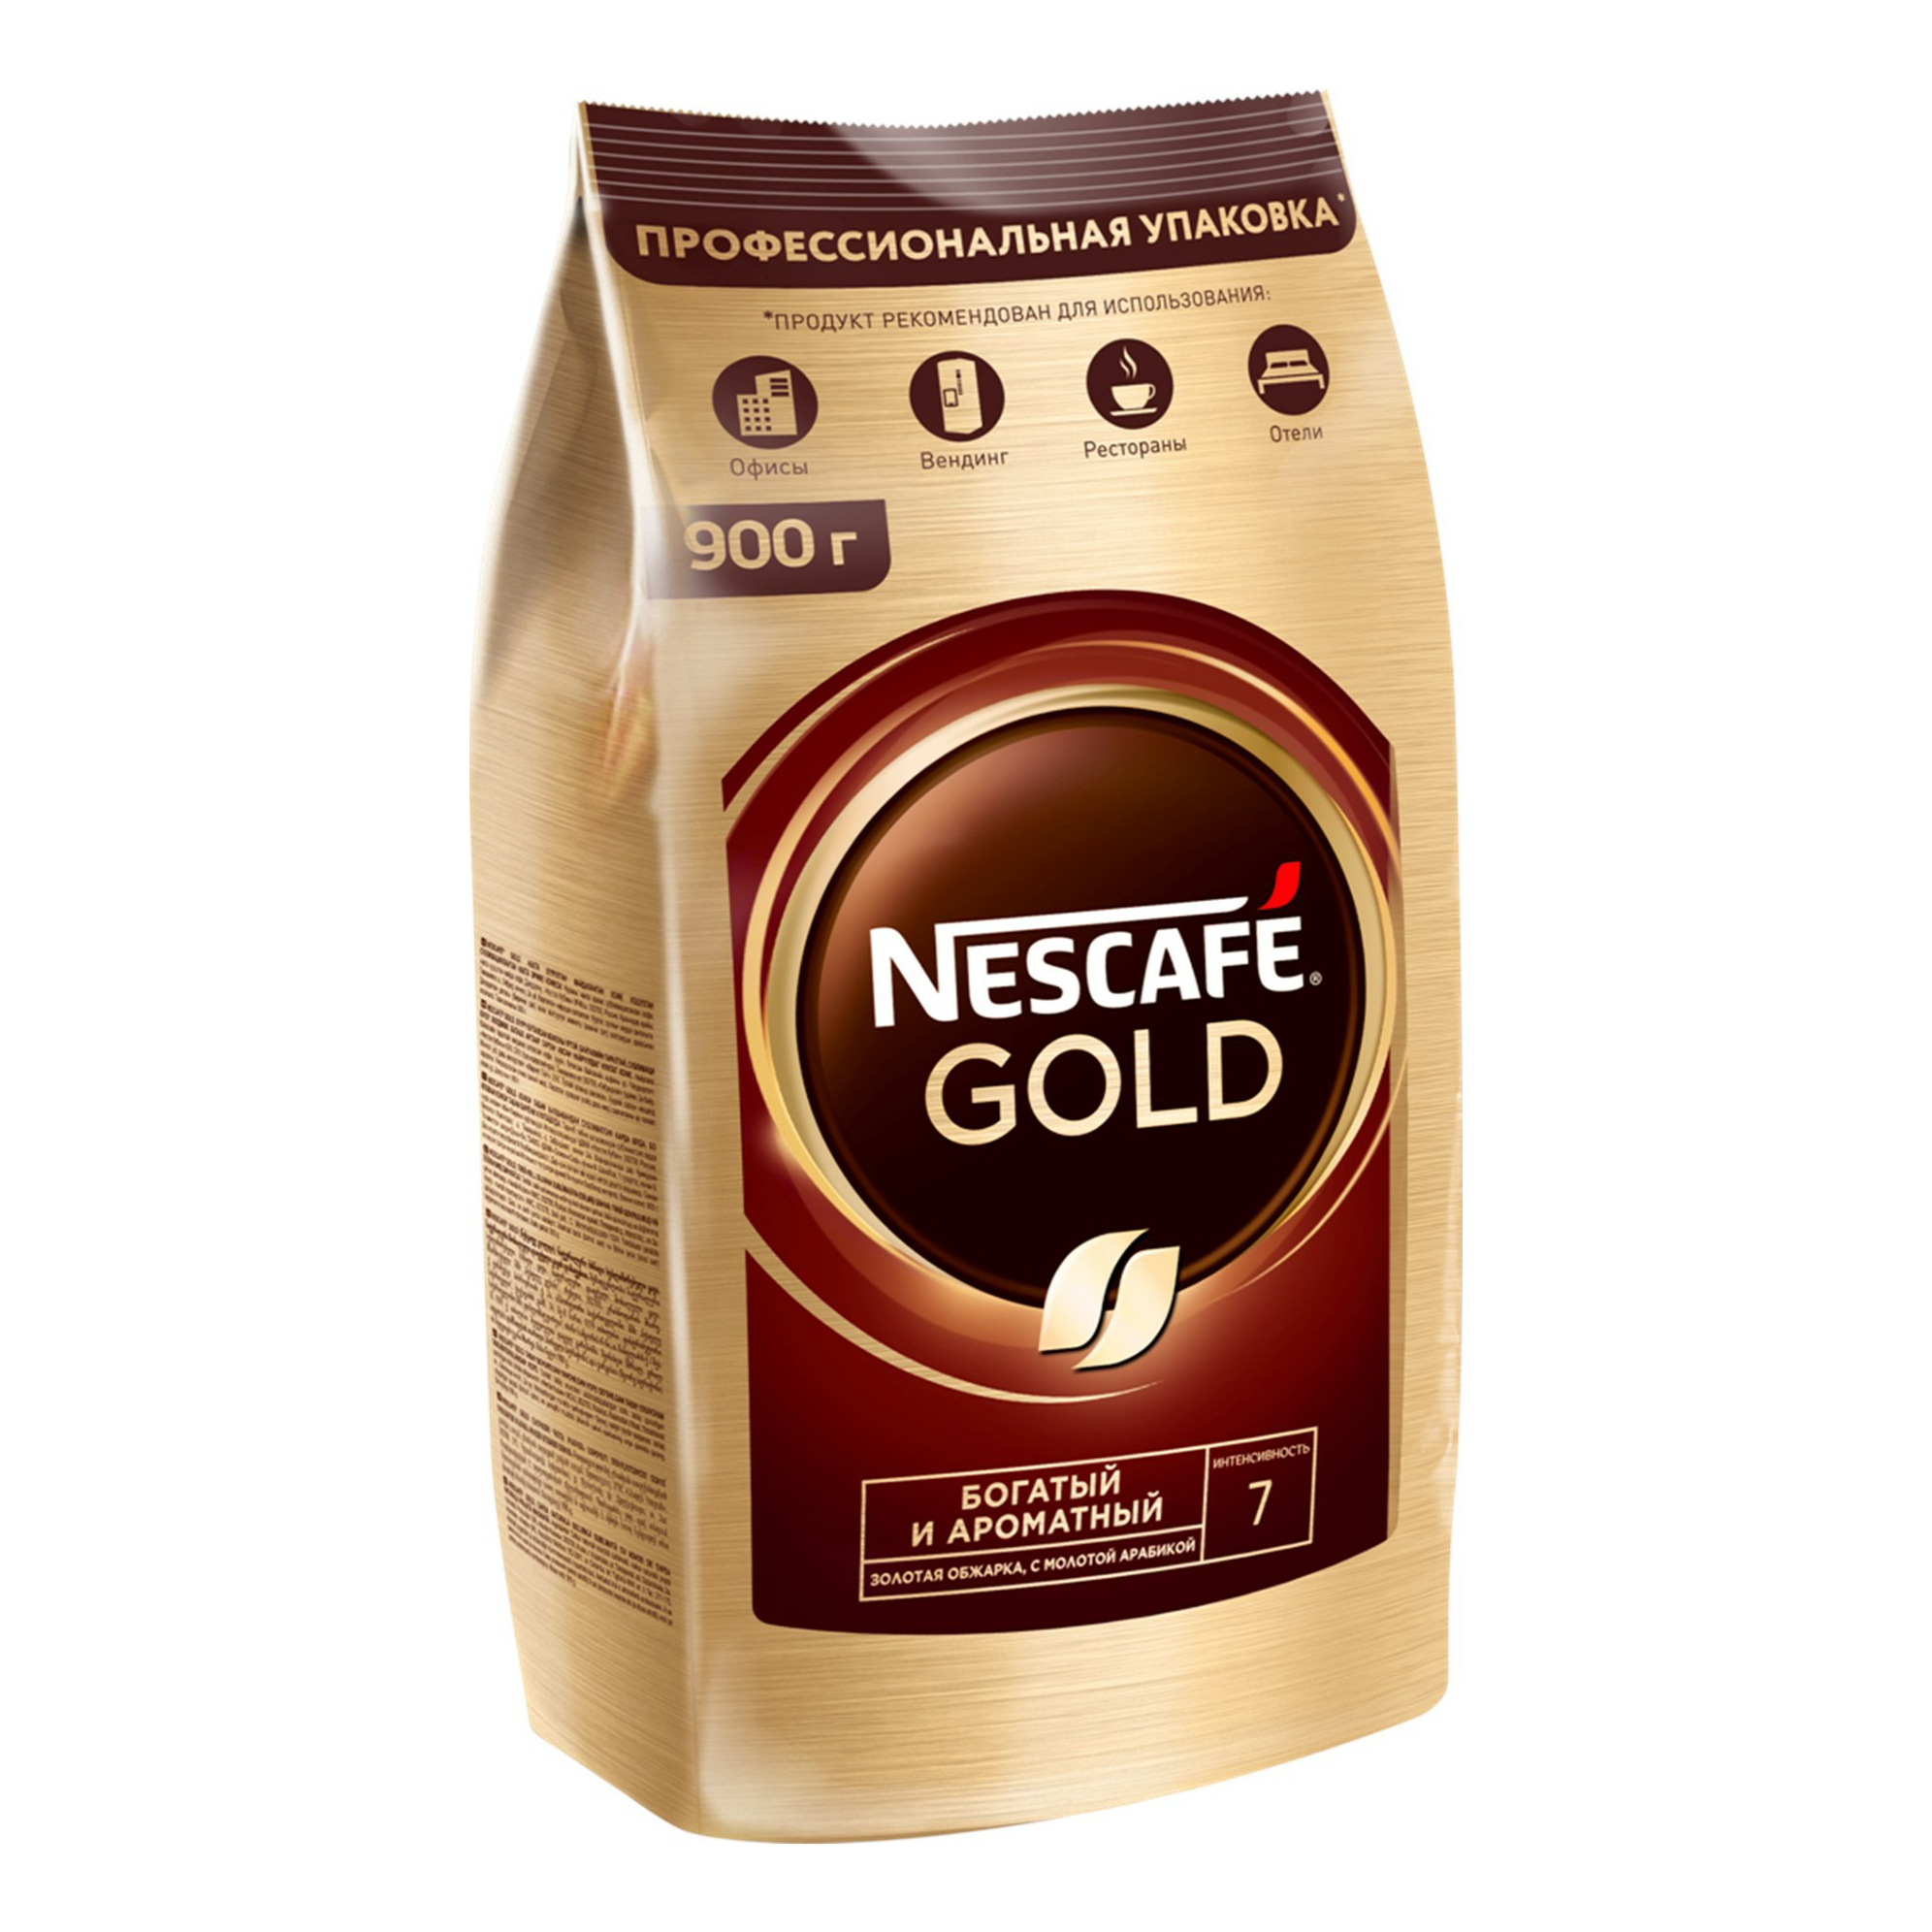 Nescafe gold пакет. Nescafe кофе Gold 900г.. Кофе растворимый Nescafe Gold 750 г. Кофе Нескафе Голд 900 гр. Кофе Nescafe Gold м/у 900г.